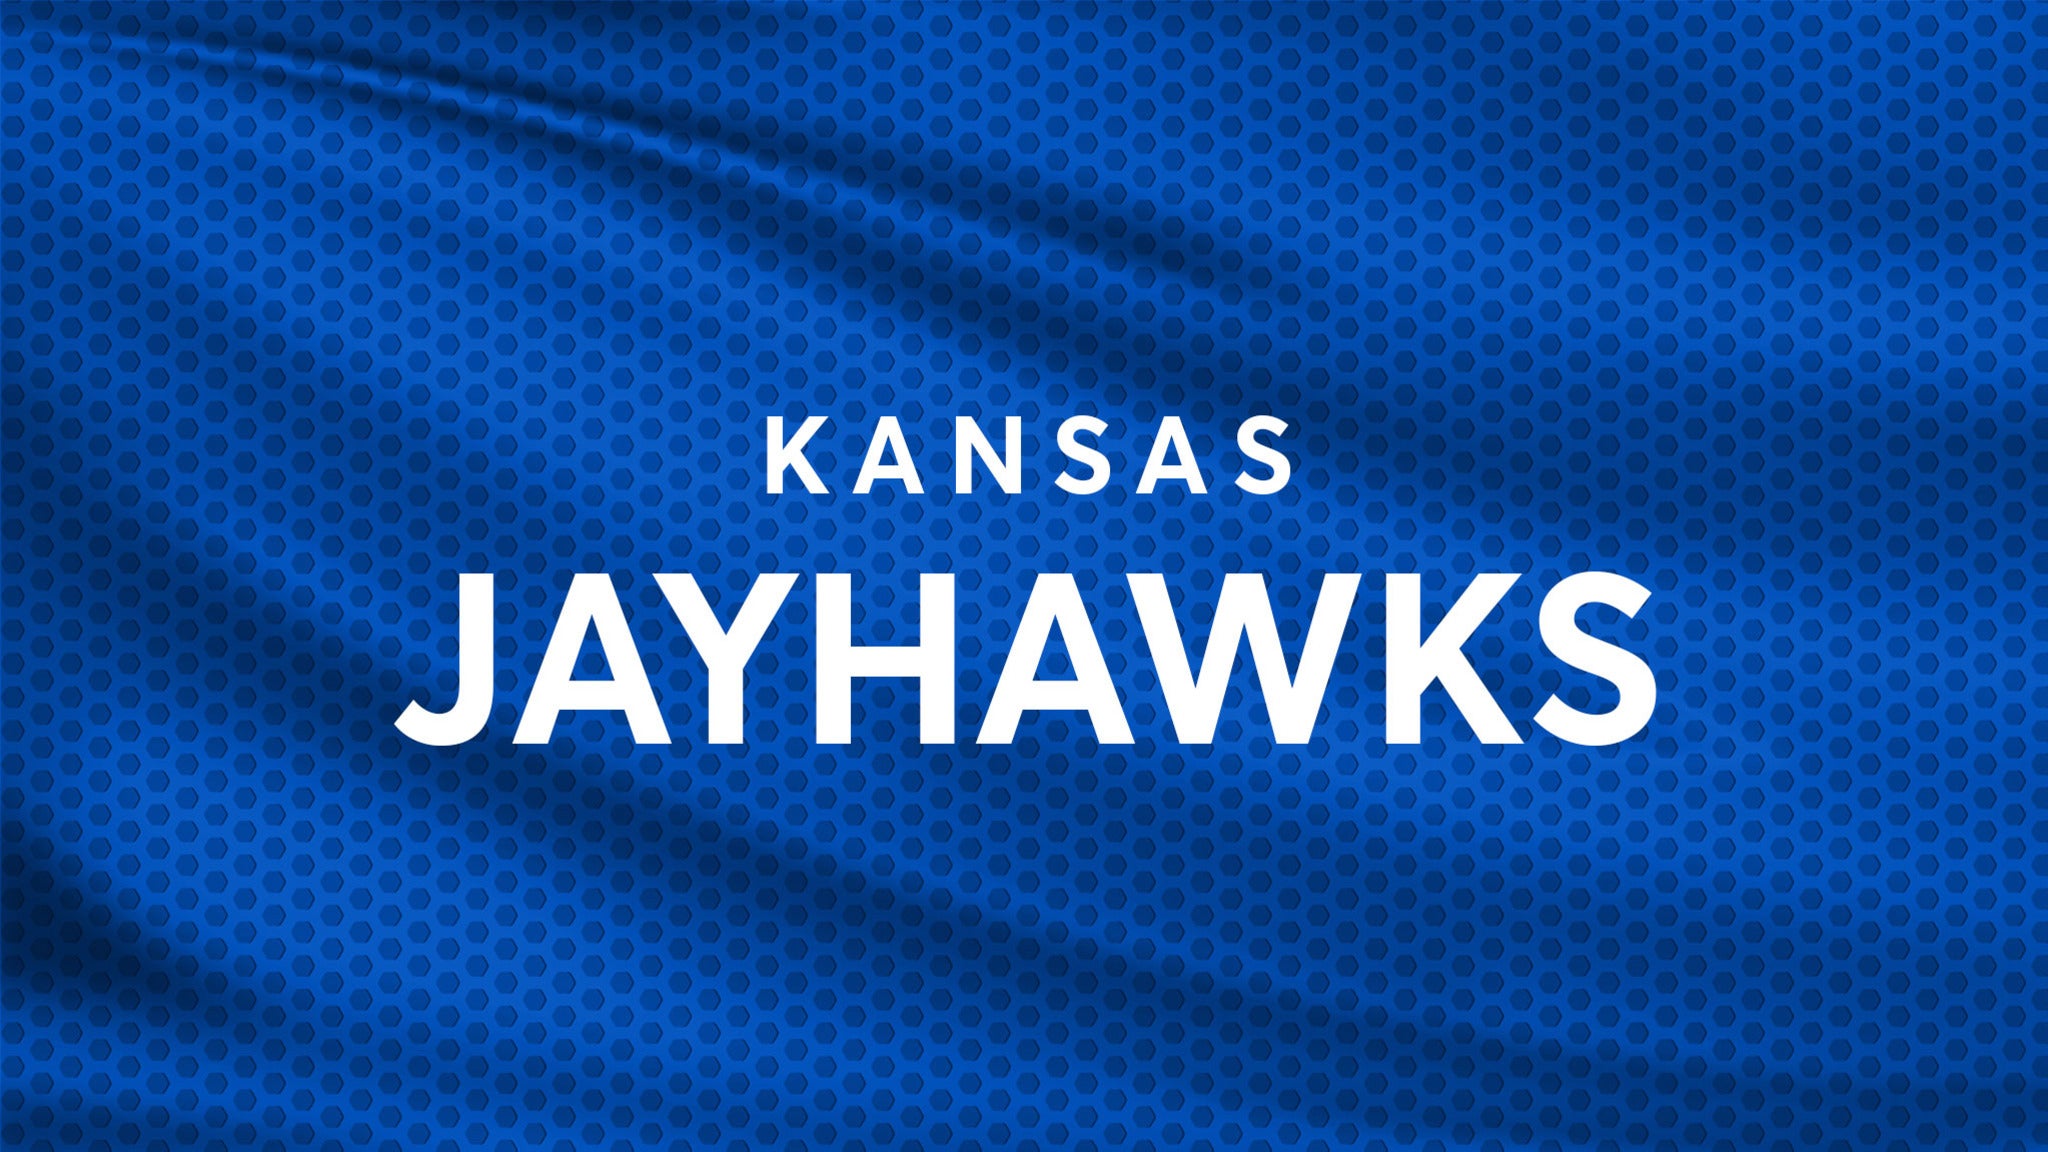 Kansas Jayhawks Mens Basketball vs. Nebraska Omaha Mavericks Mens Basketball